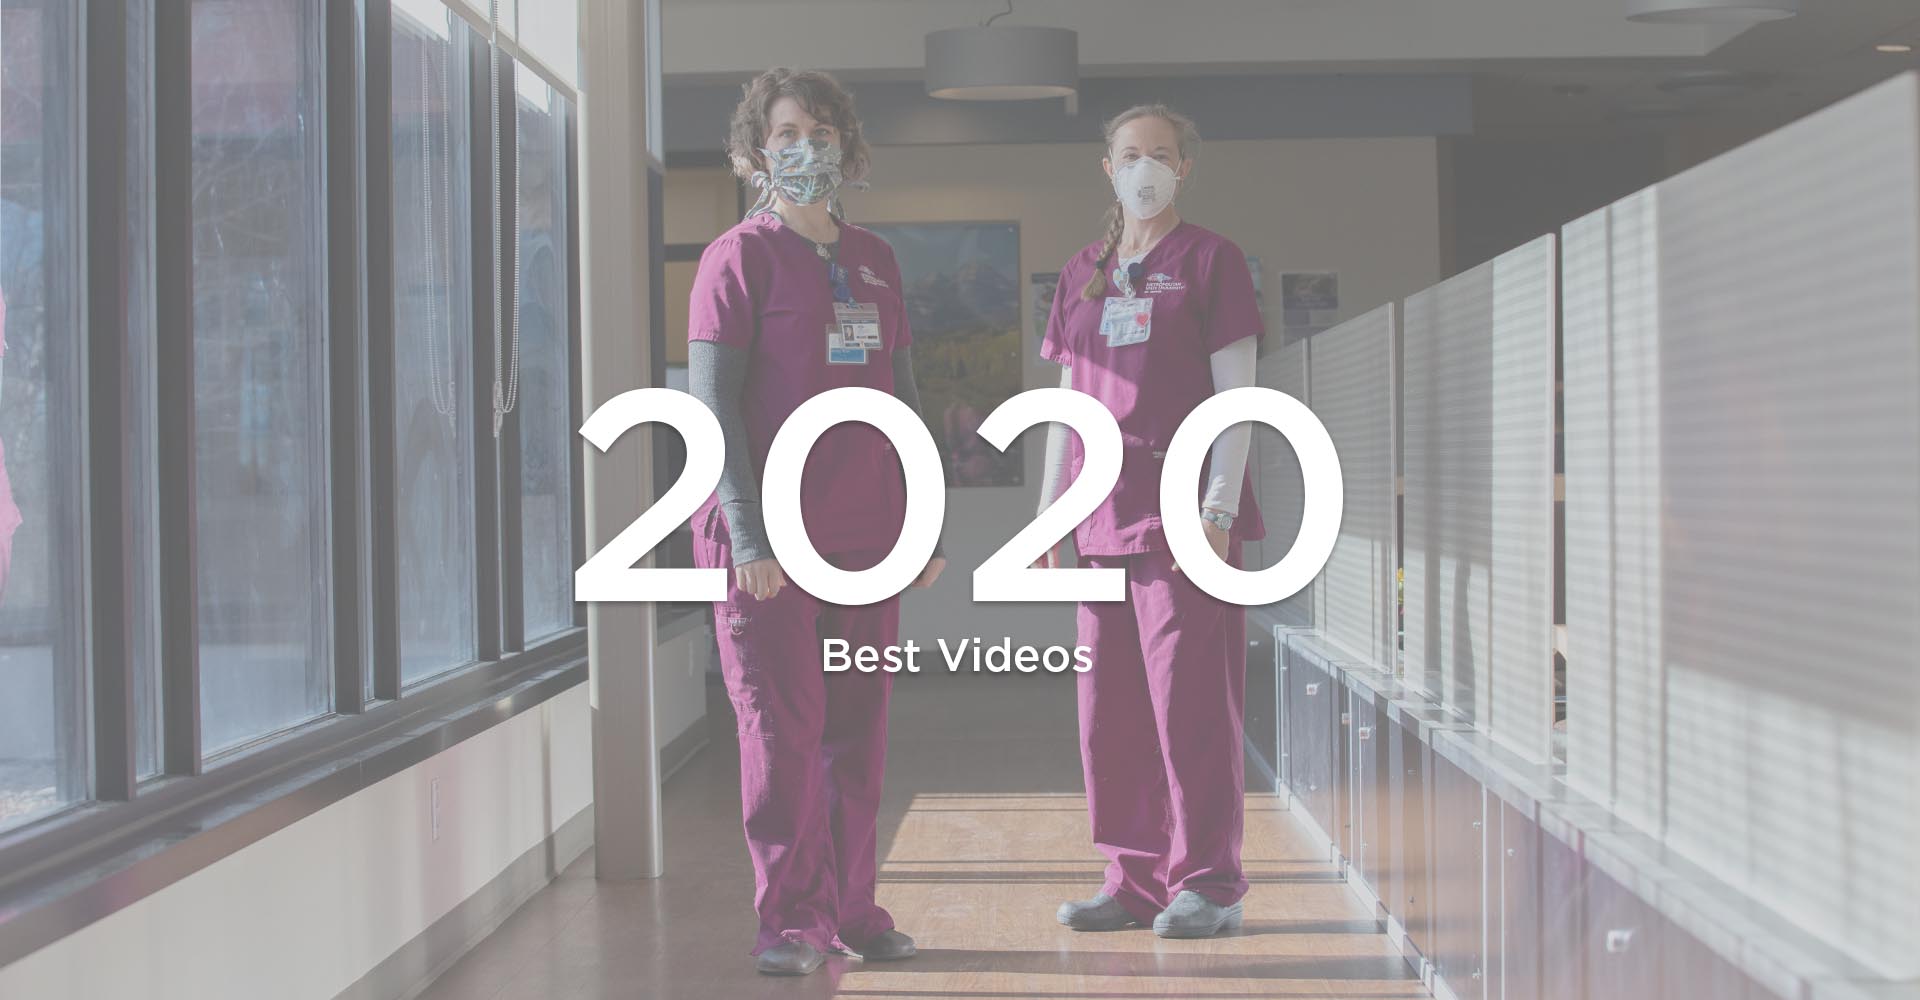 Best RED videos 2020